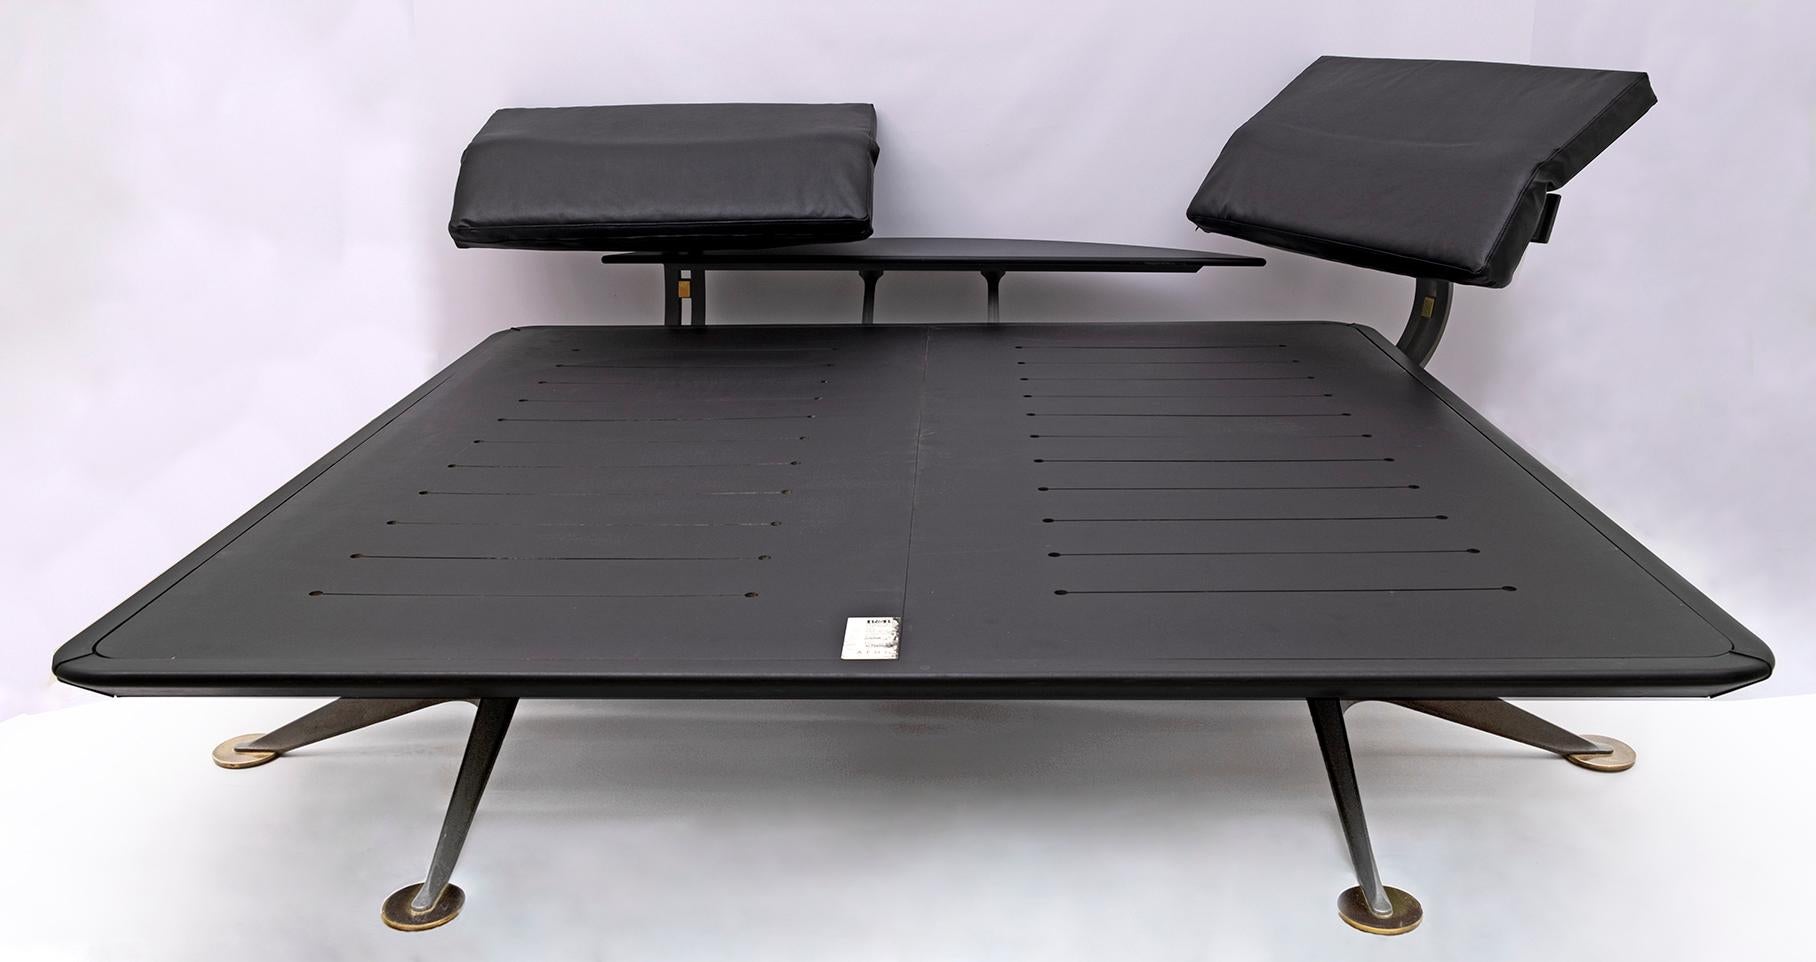 Fabuleux lit à plateforme réglable Adia conçu par Paolo Piva pour B&B Italia dans les années 1980. Le lit est fabriqué en acier moulé et revêtu d'une poudre texturée gris ardoise avec des pieds en laiton brossé. Les appuis-tête en cuir noir sont